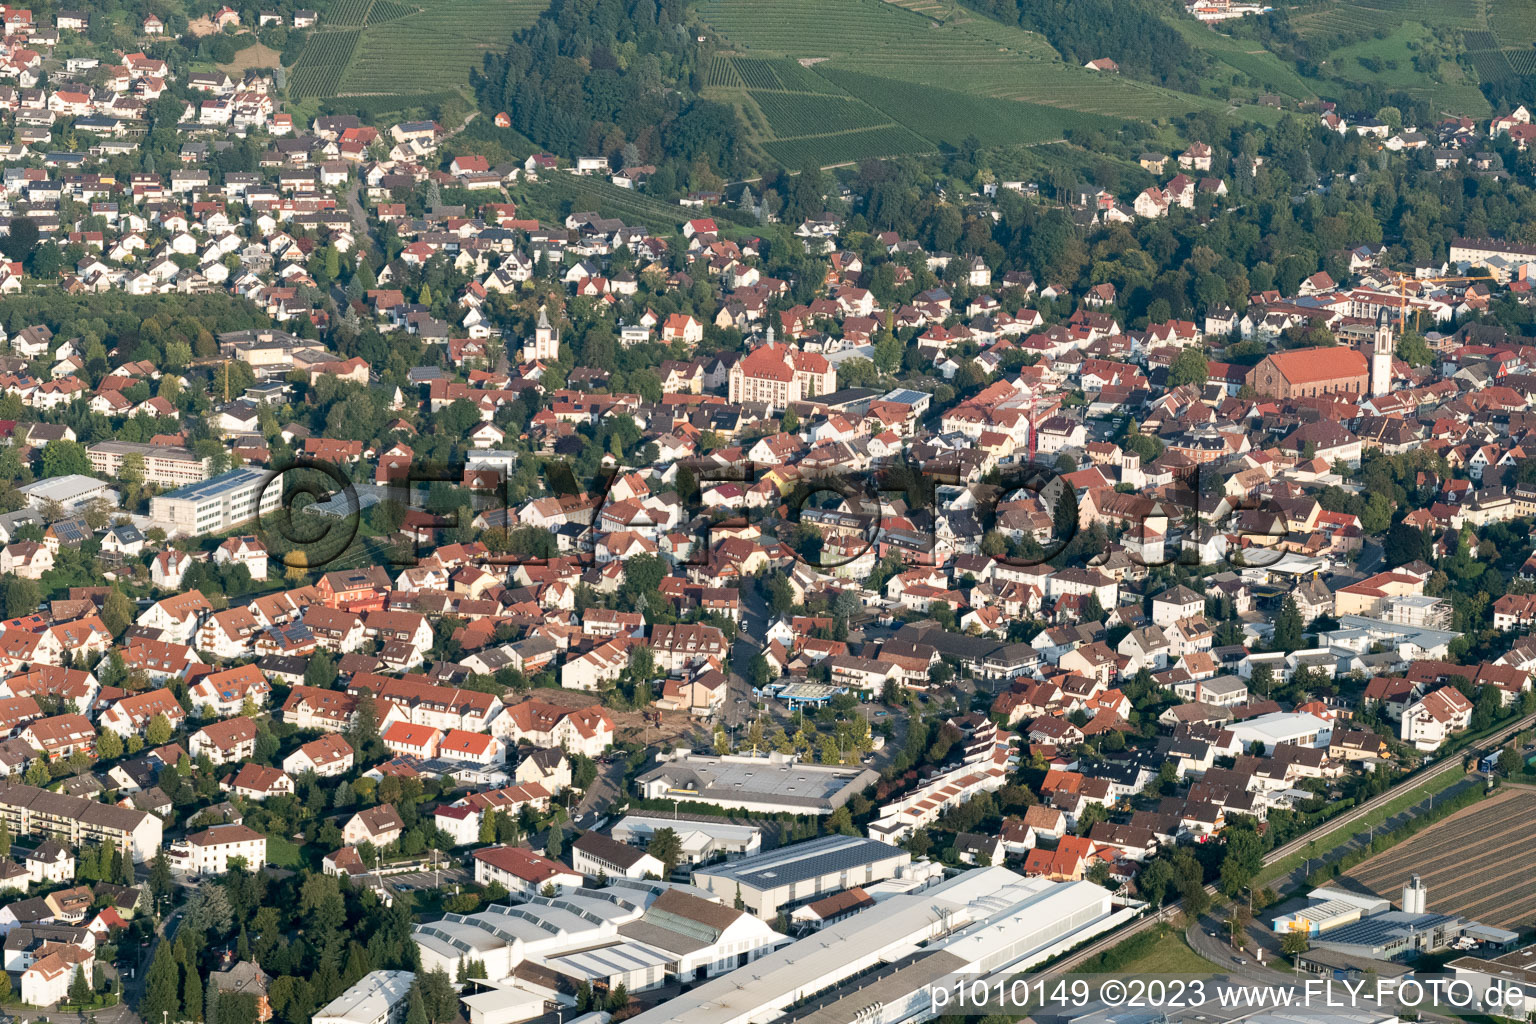 Luftbild von Ortsteil Gaisbach in Oberkirch im Bundesland Baden-Württemberg, Deutschland